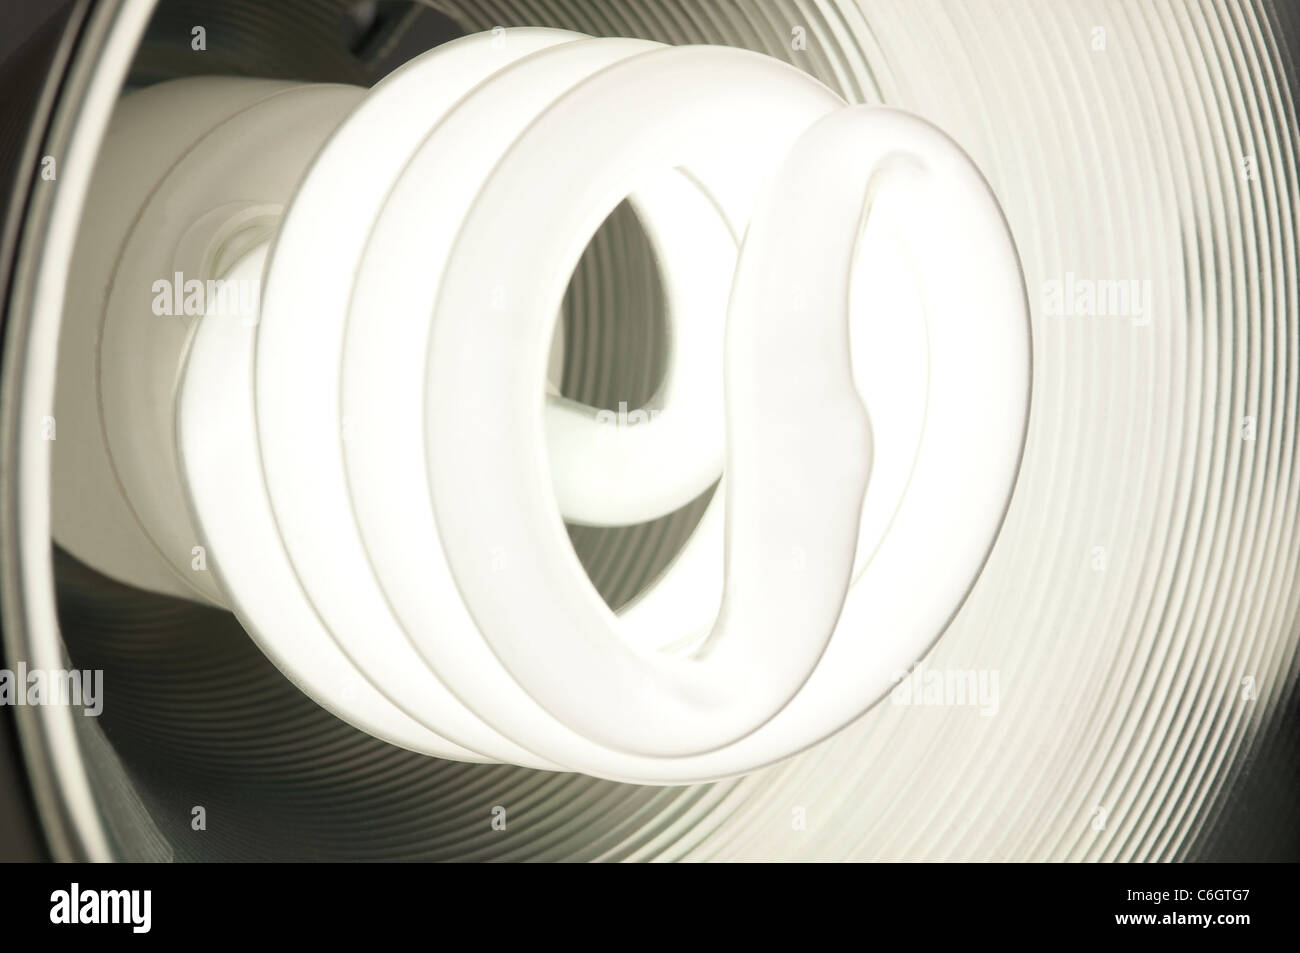 Ampoule fluorescente compacte à économie d'énergie à l'intérieur d'un rougeoyant plat rond en métal Banque D'Images